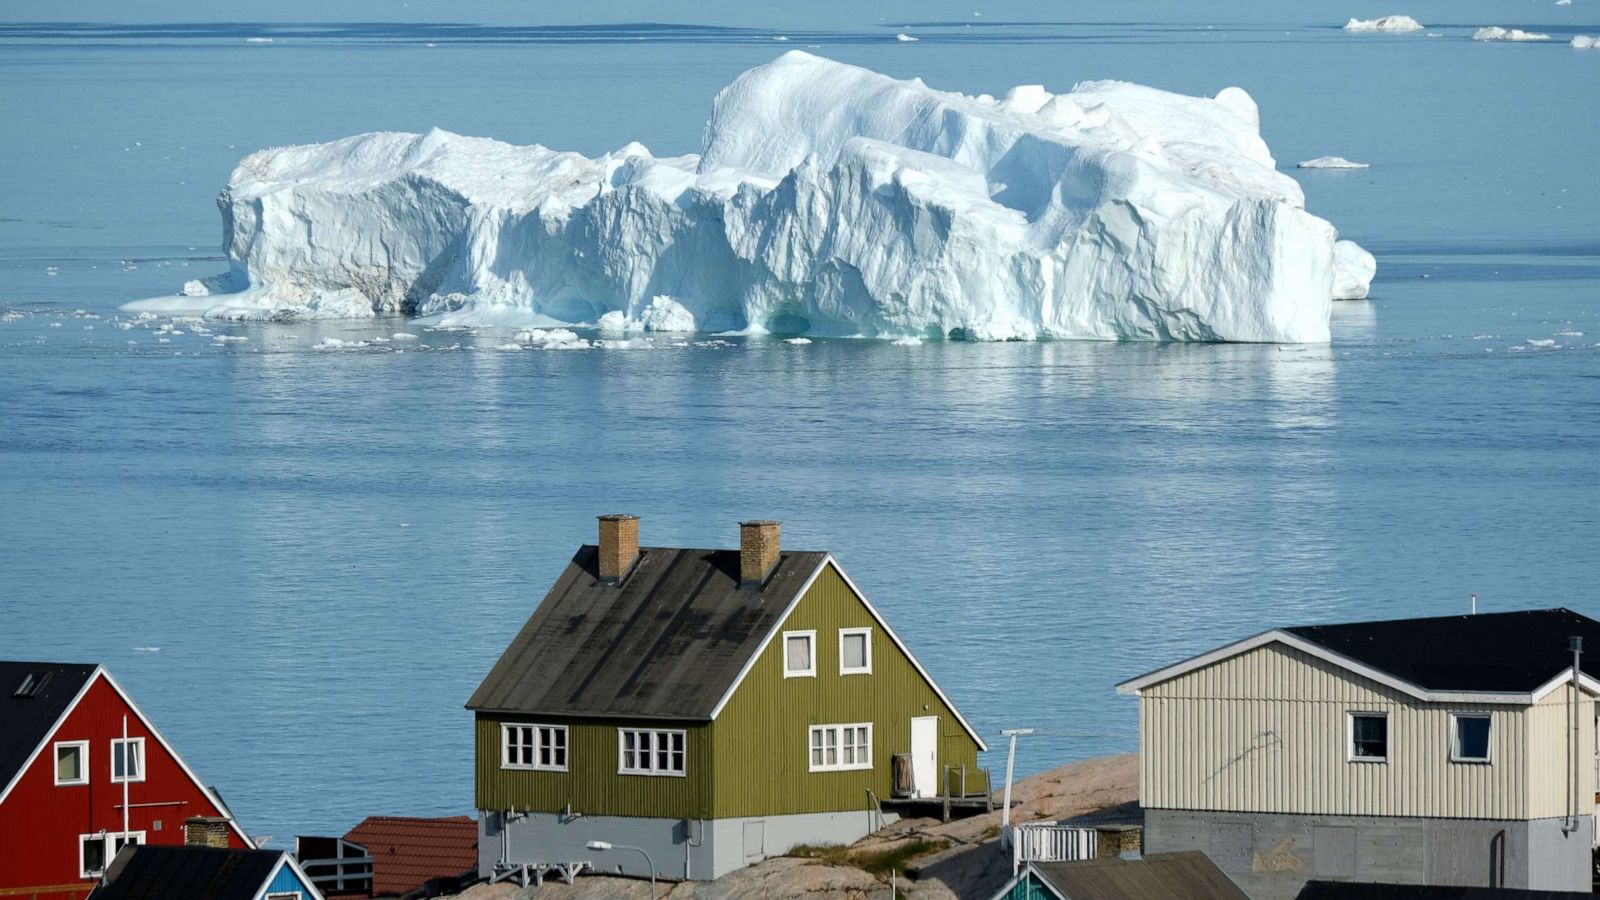 ग्रीनलैंड की बर्फ की चादर ढहना: समुद्र के स्तर में वृद्धि का एक महत्वपूर्ण बिंदु